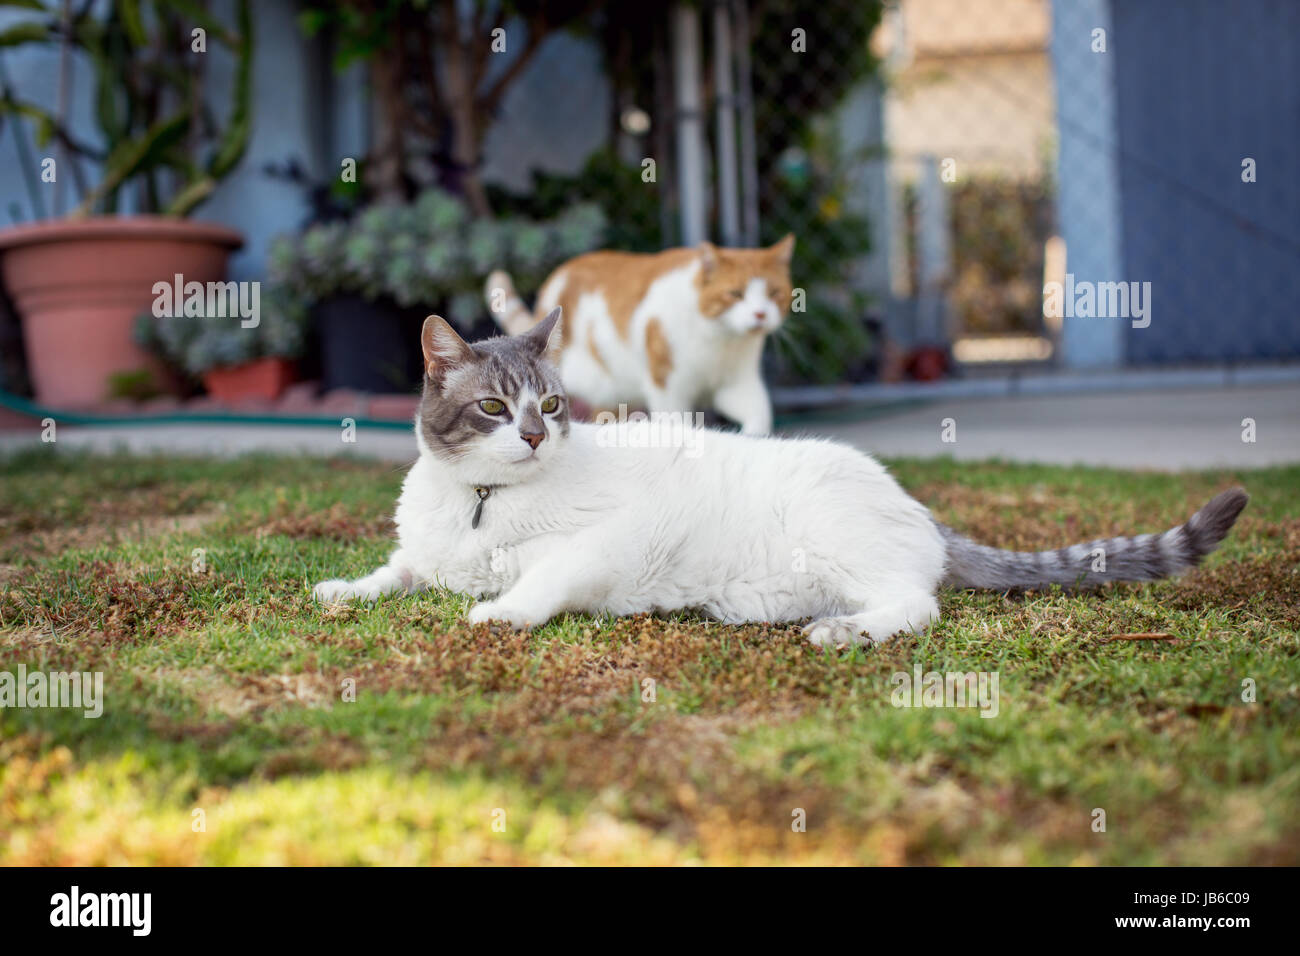 Weiße Katze Faulenzen am Rasen im Vorgarten während einer orange Katze schlendert vorbei in den Hintergrund. Stockfoto